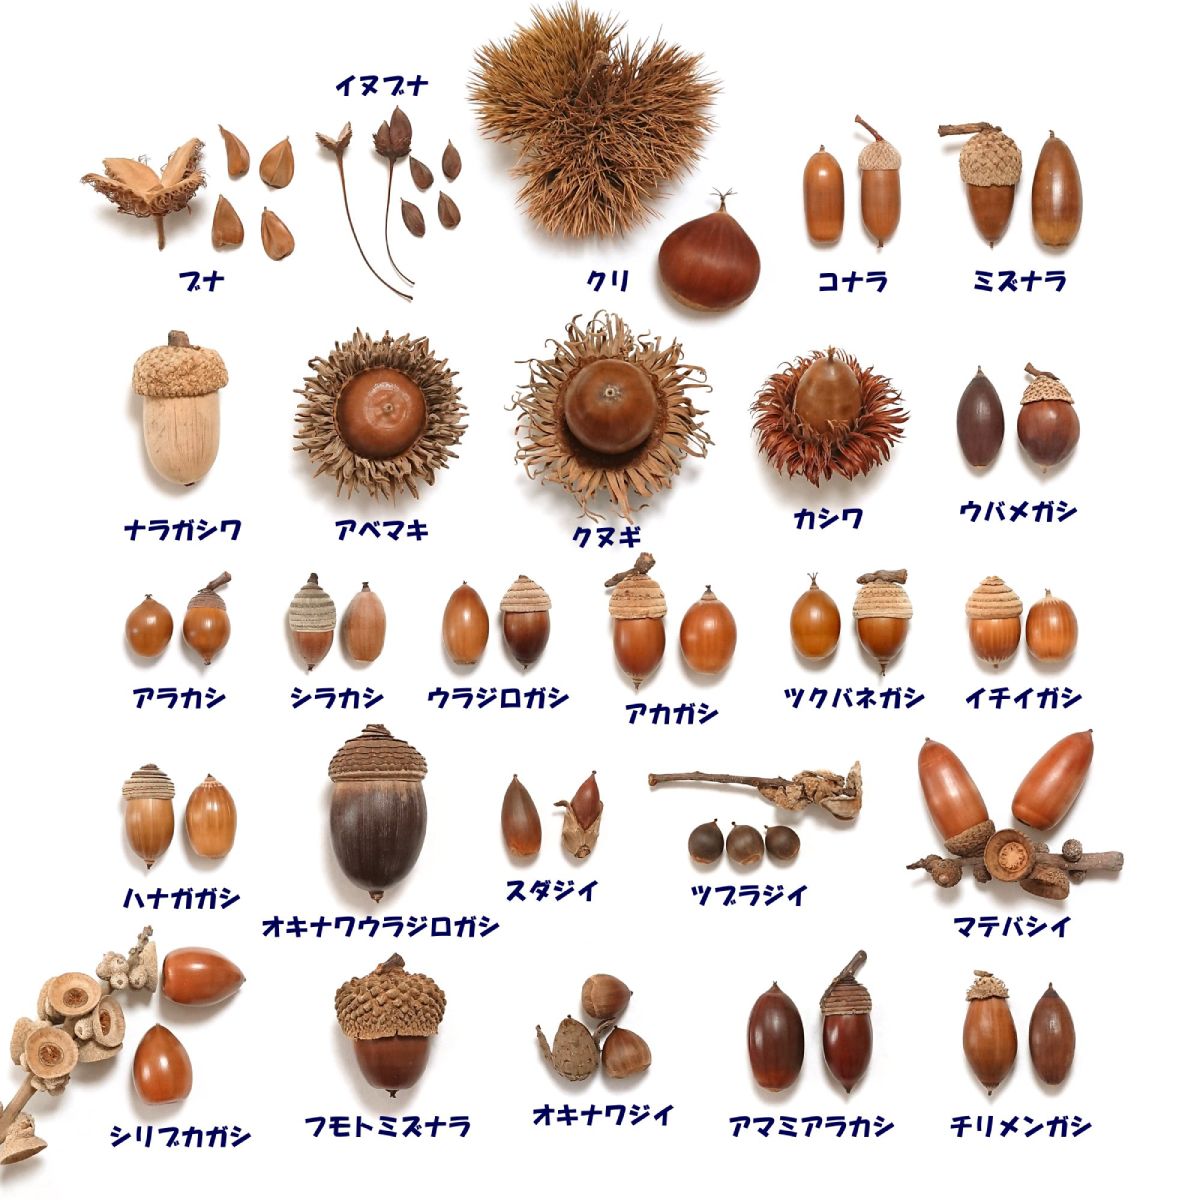 亜種4種も含め、日本国内に生育する26ものどんぐり。